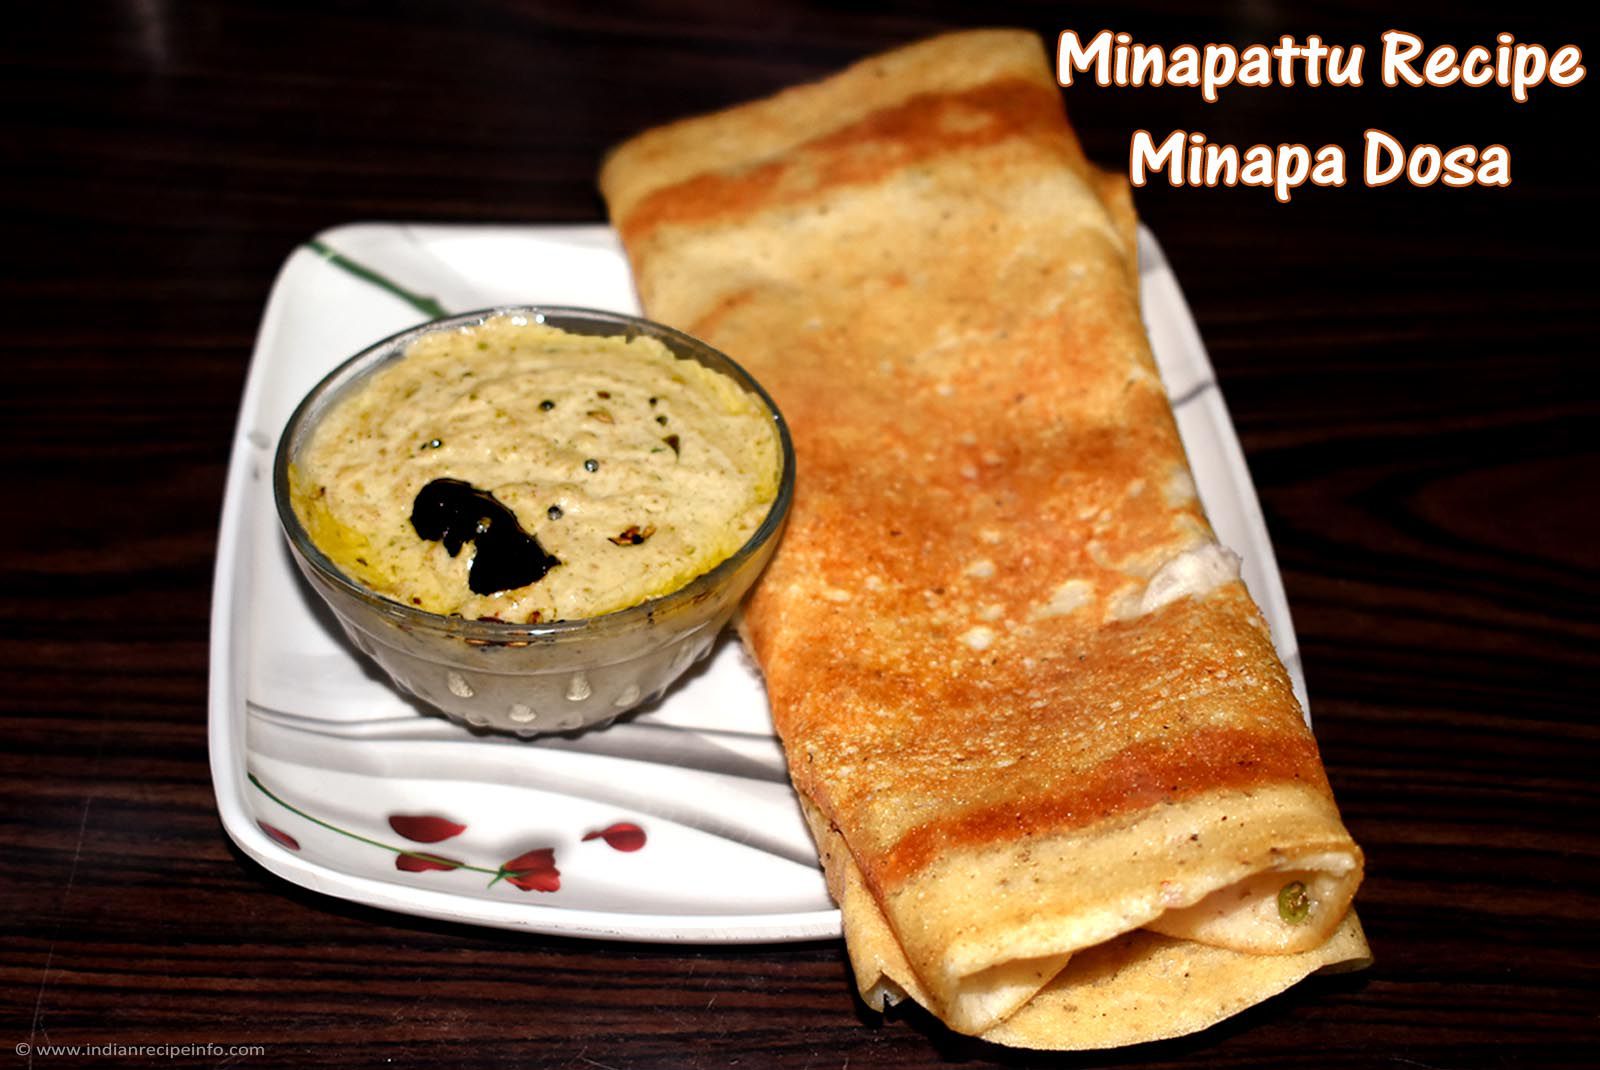 Minapa Dosa Recipe | Minapattu Recipe | How to make Minapa Dosa